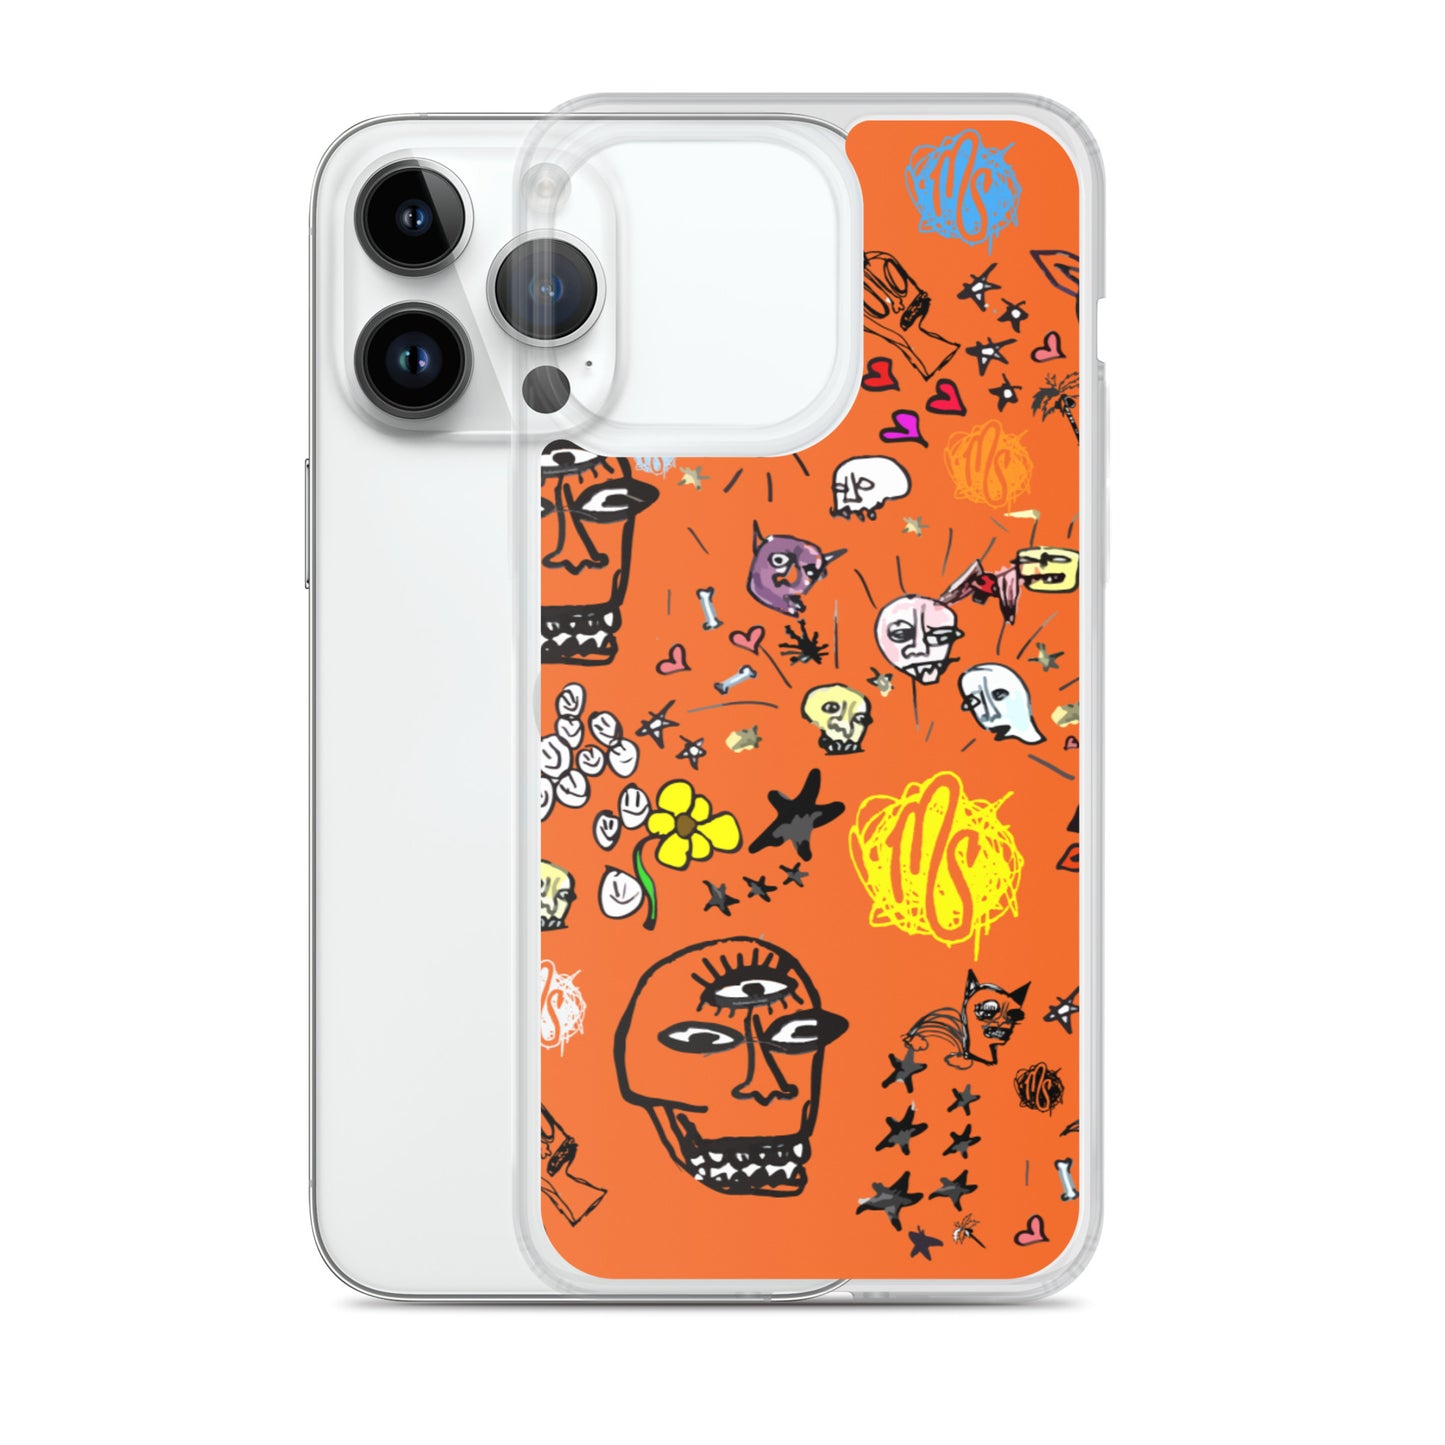 Art All Over Orange iPhone Case